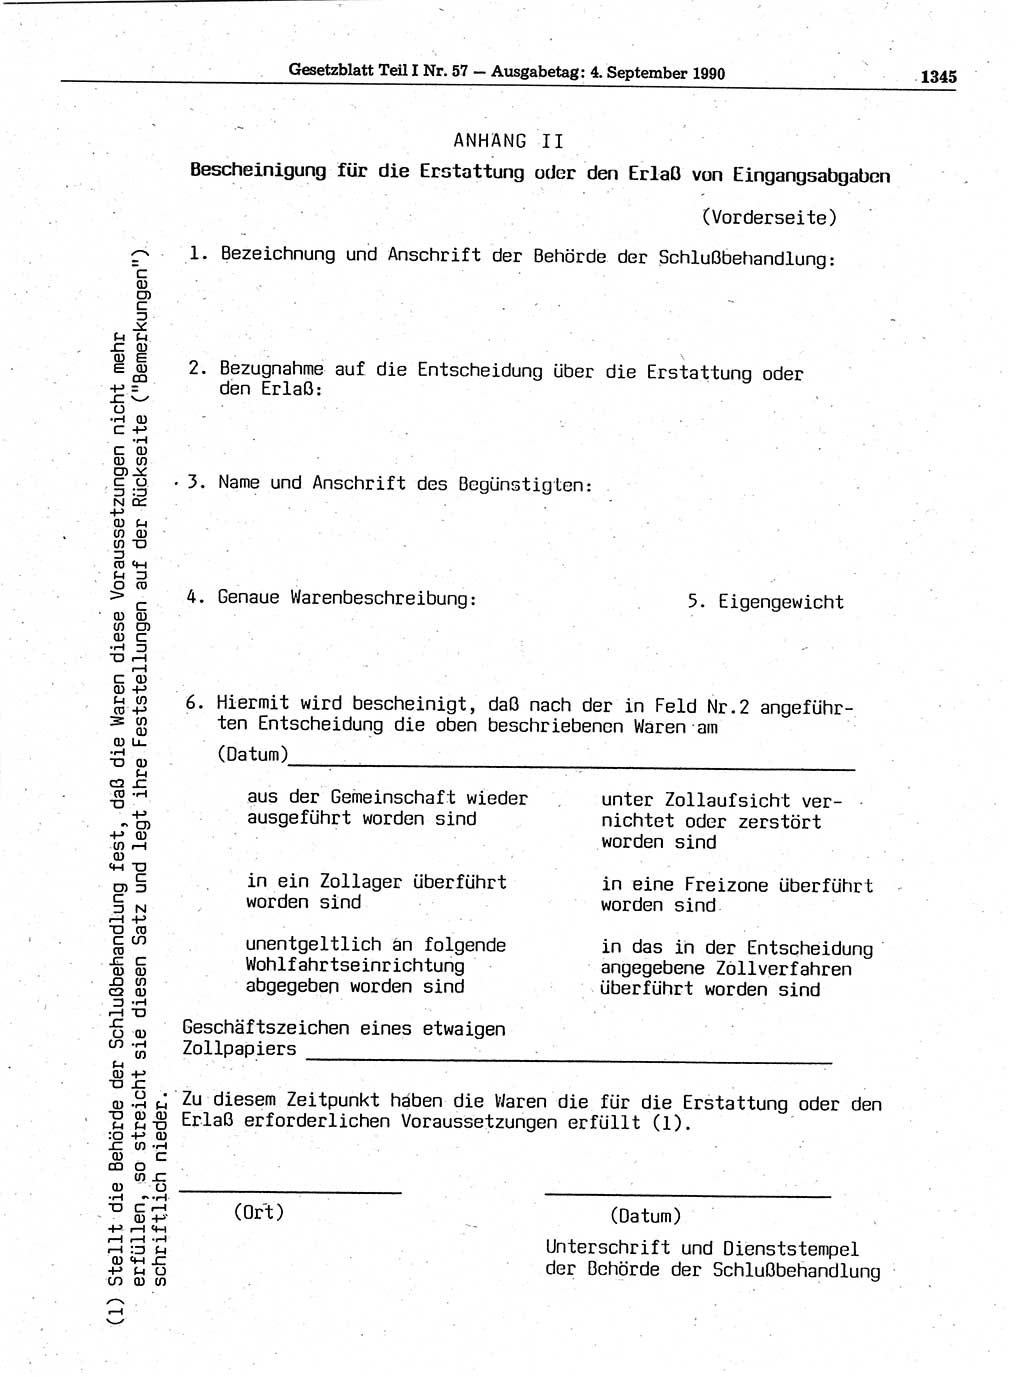 Gesetzblatt (GBl.) der Deutschen Demokratischen Republik (DDR) Teil Ⅰ 1990, Seite 1345 (GBl. DDR Ⅰ 1990, S. 1345)